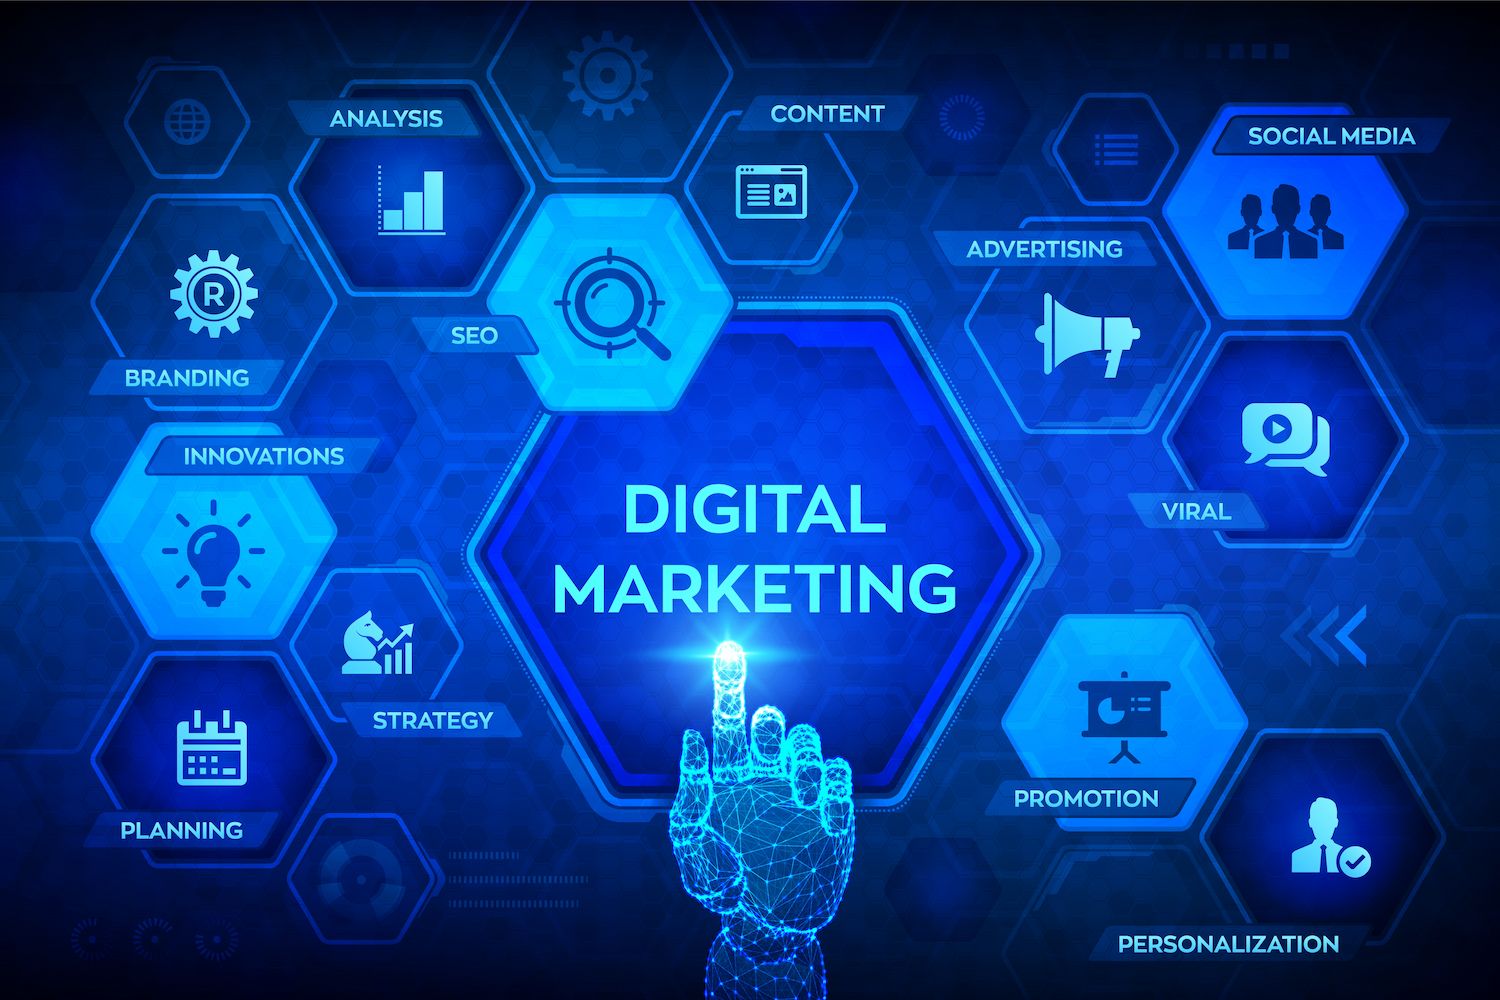 Imagem com marketing digital no centro apontado por mão robótica e palavras relacionadas em volta, representando como organizar o marketing digital da empresa.